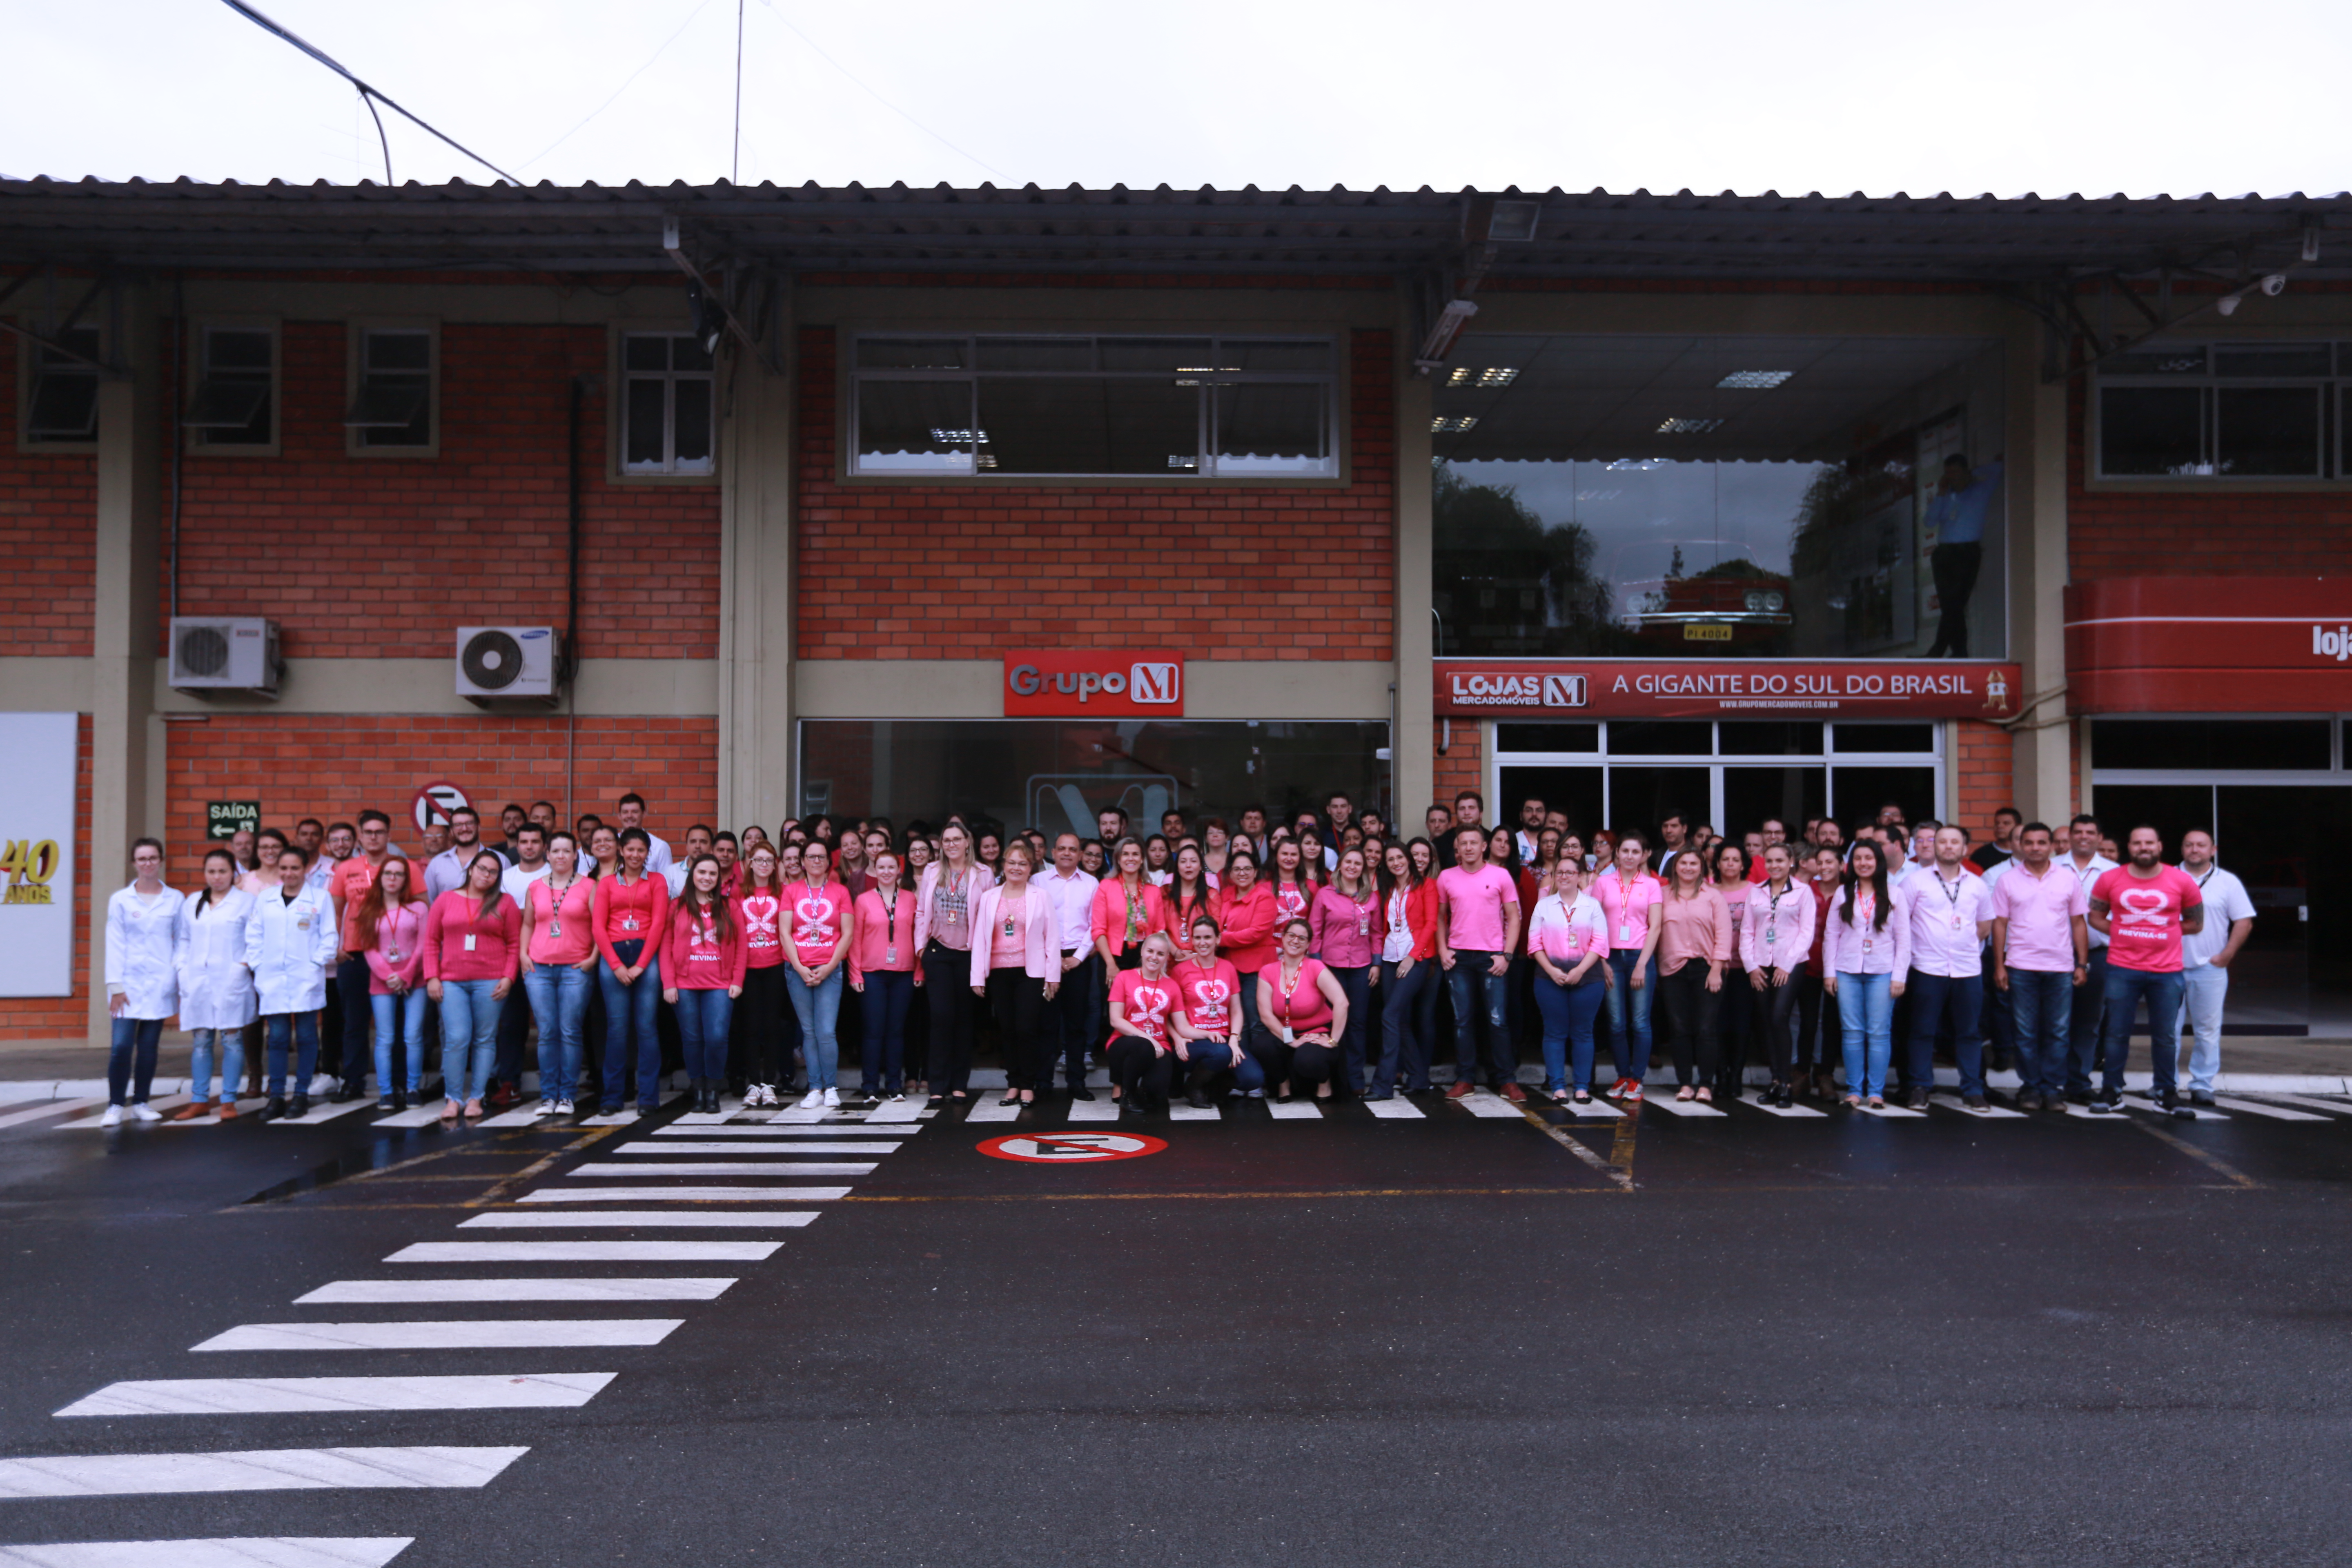 Foto 3 / Lojas MM promove ações em alusão ao Outubro Rosa 